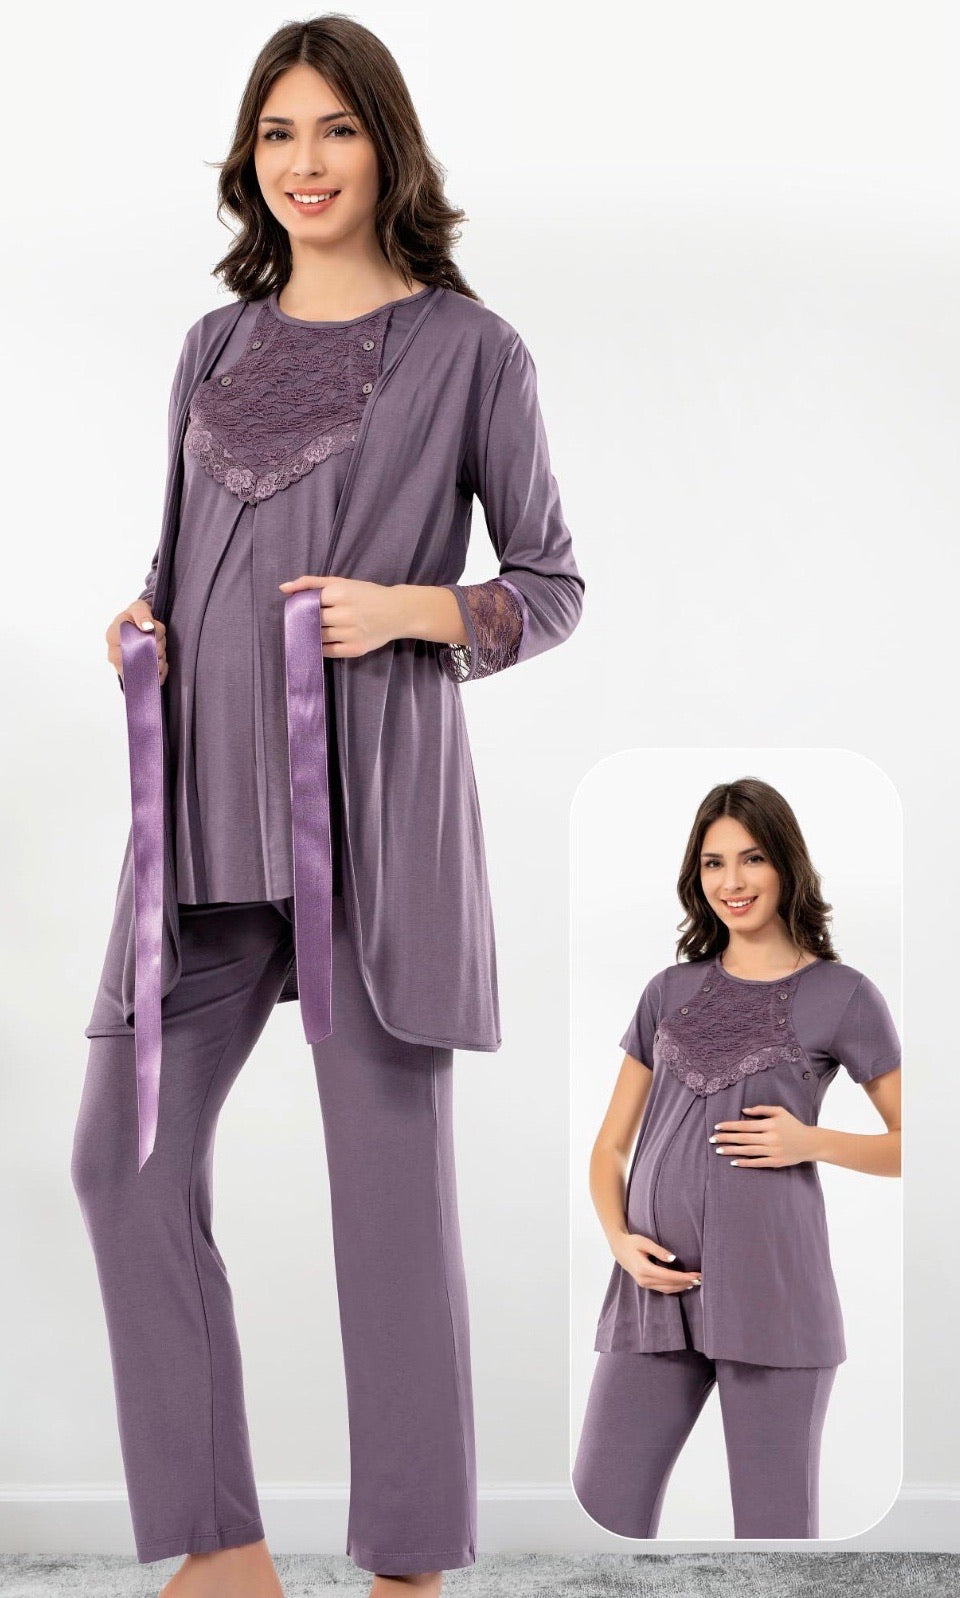 Pyjama femme enceinte nouveau model - Le monde de pyjama